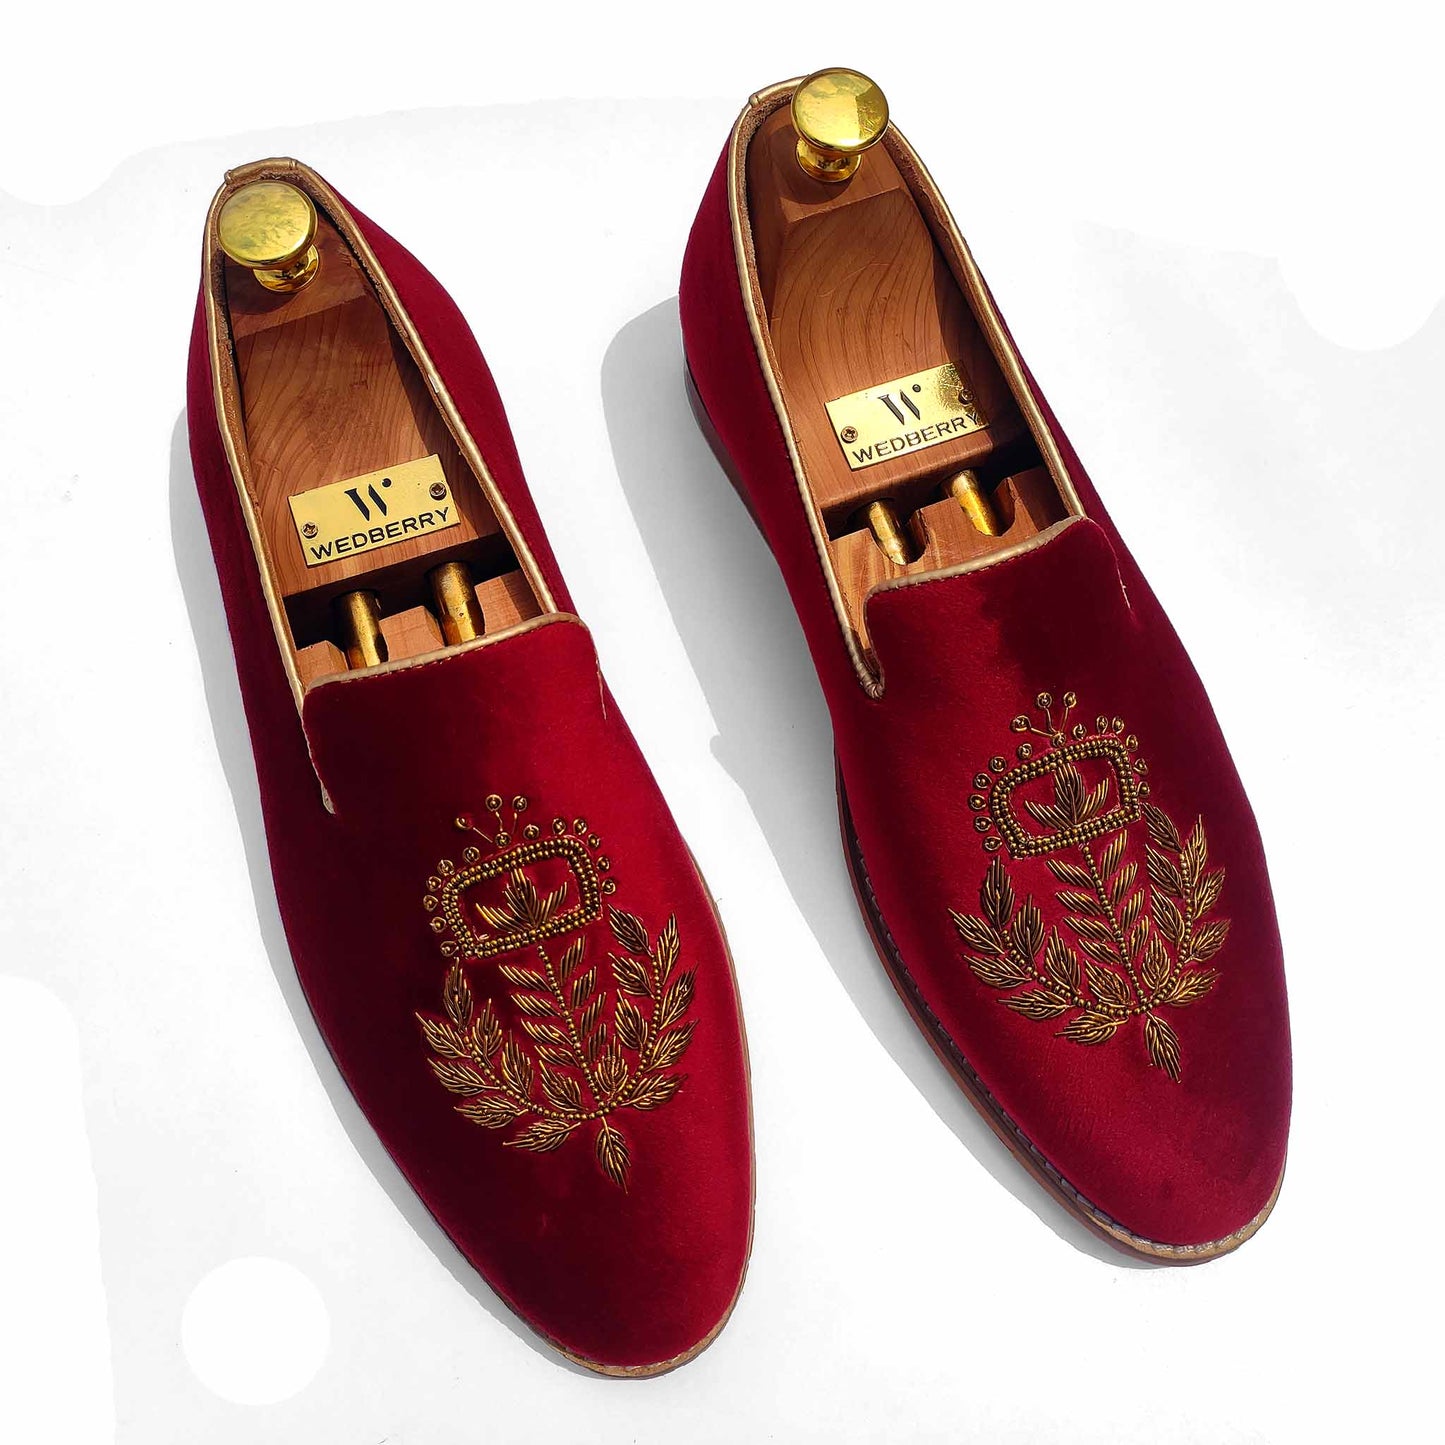 Maroon Velvet Antique Gold Zardozi Handwork Wedding Ethnic Shoes Loafers for Men